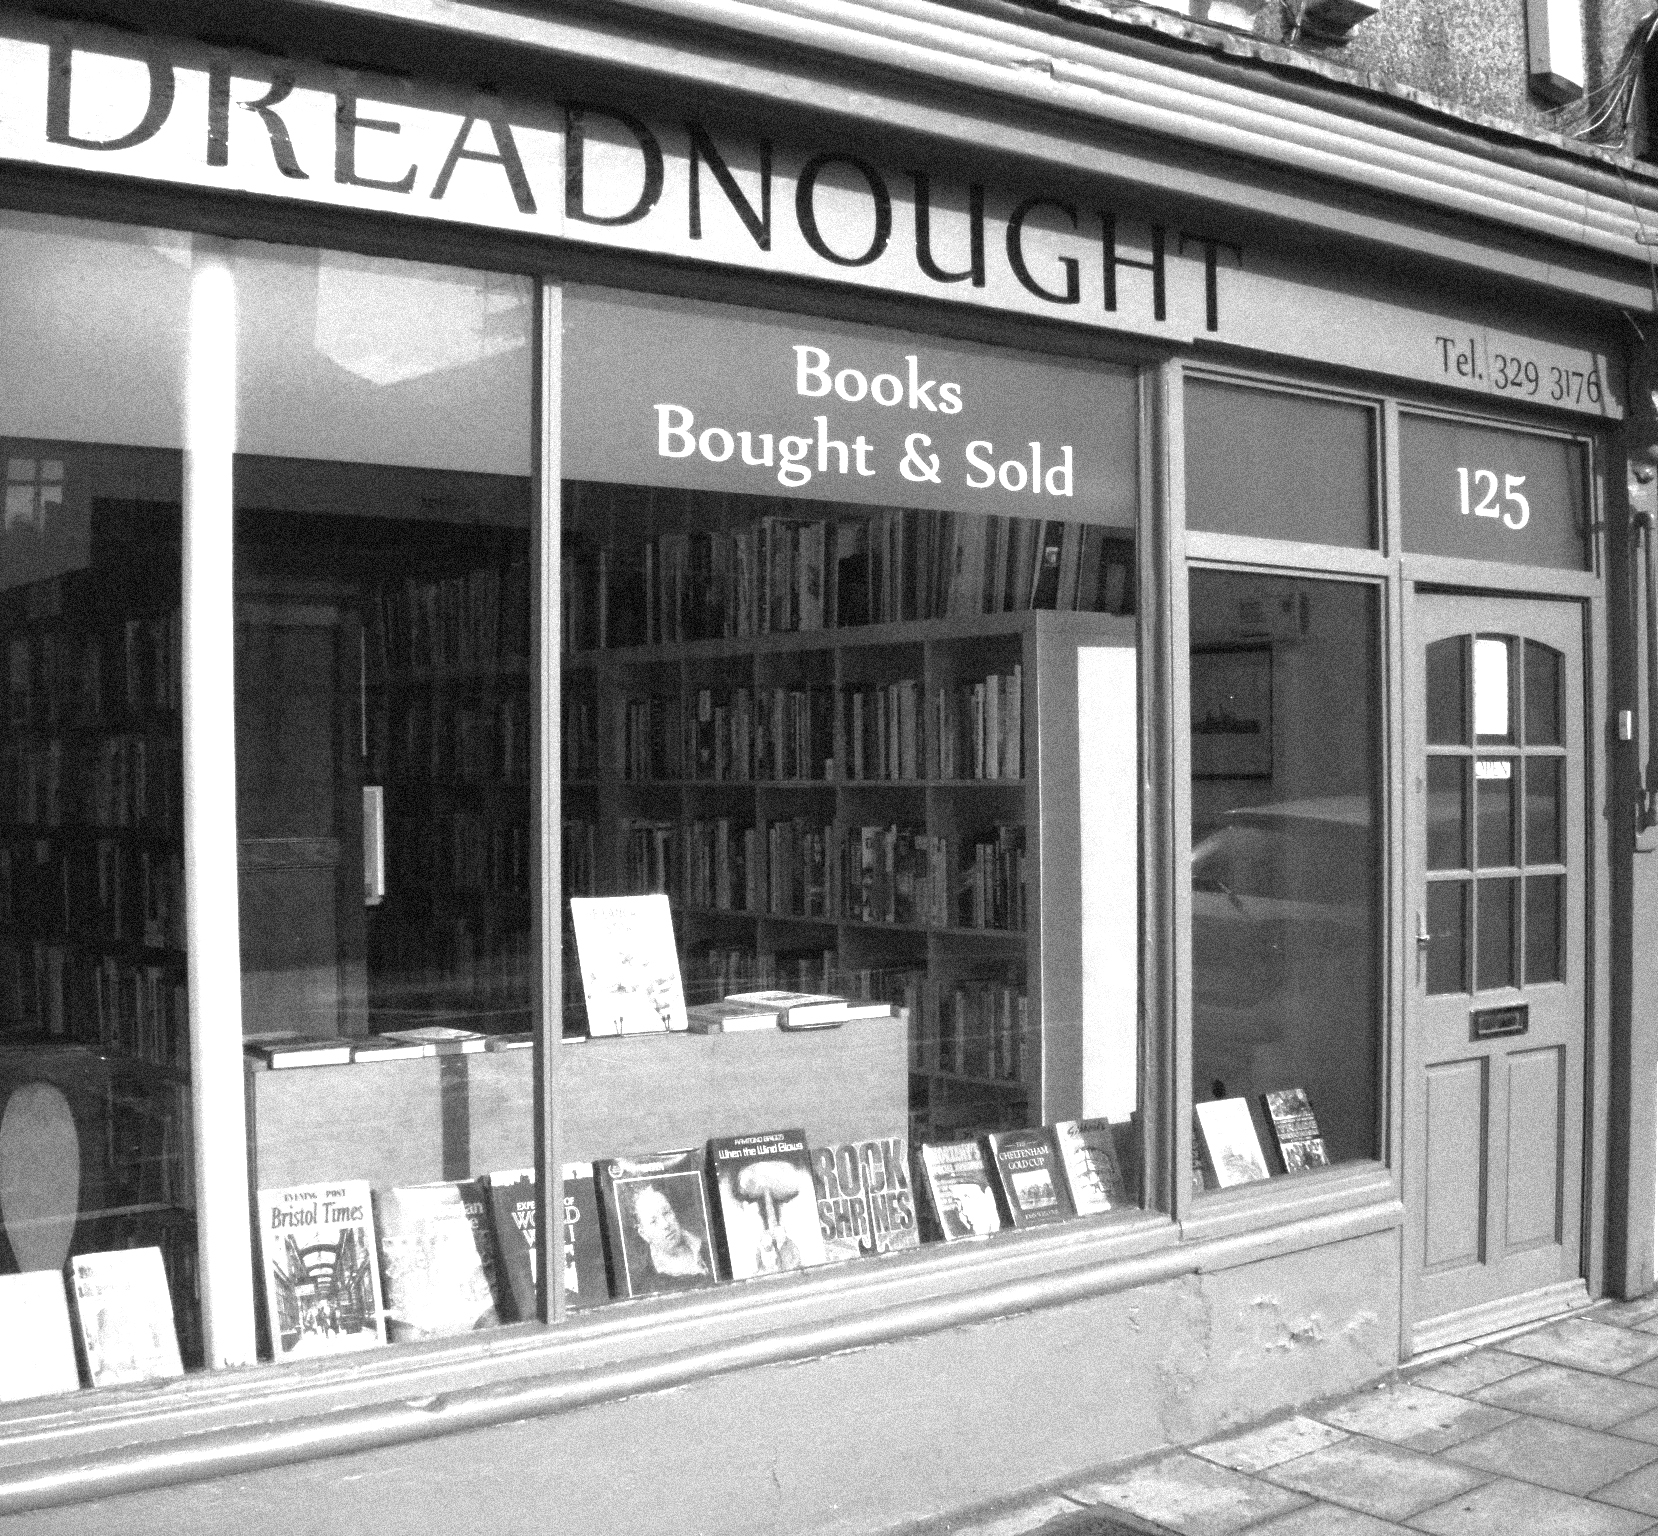 (c) Dreadnoughtbooks.co.uk